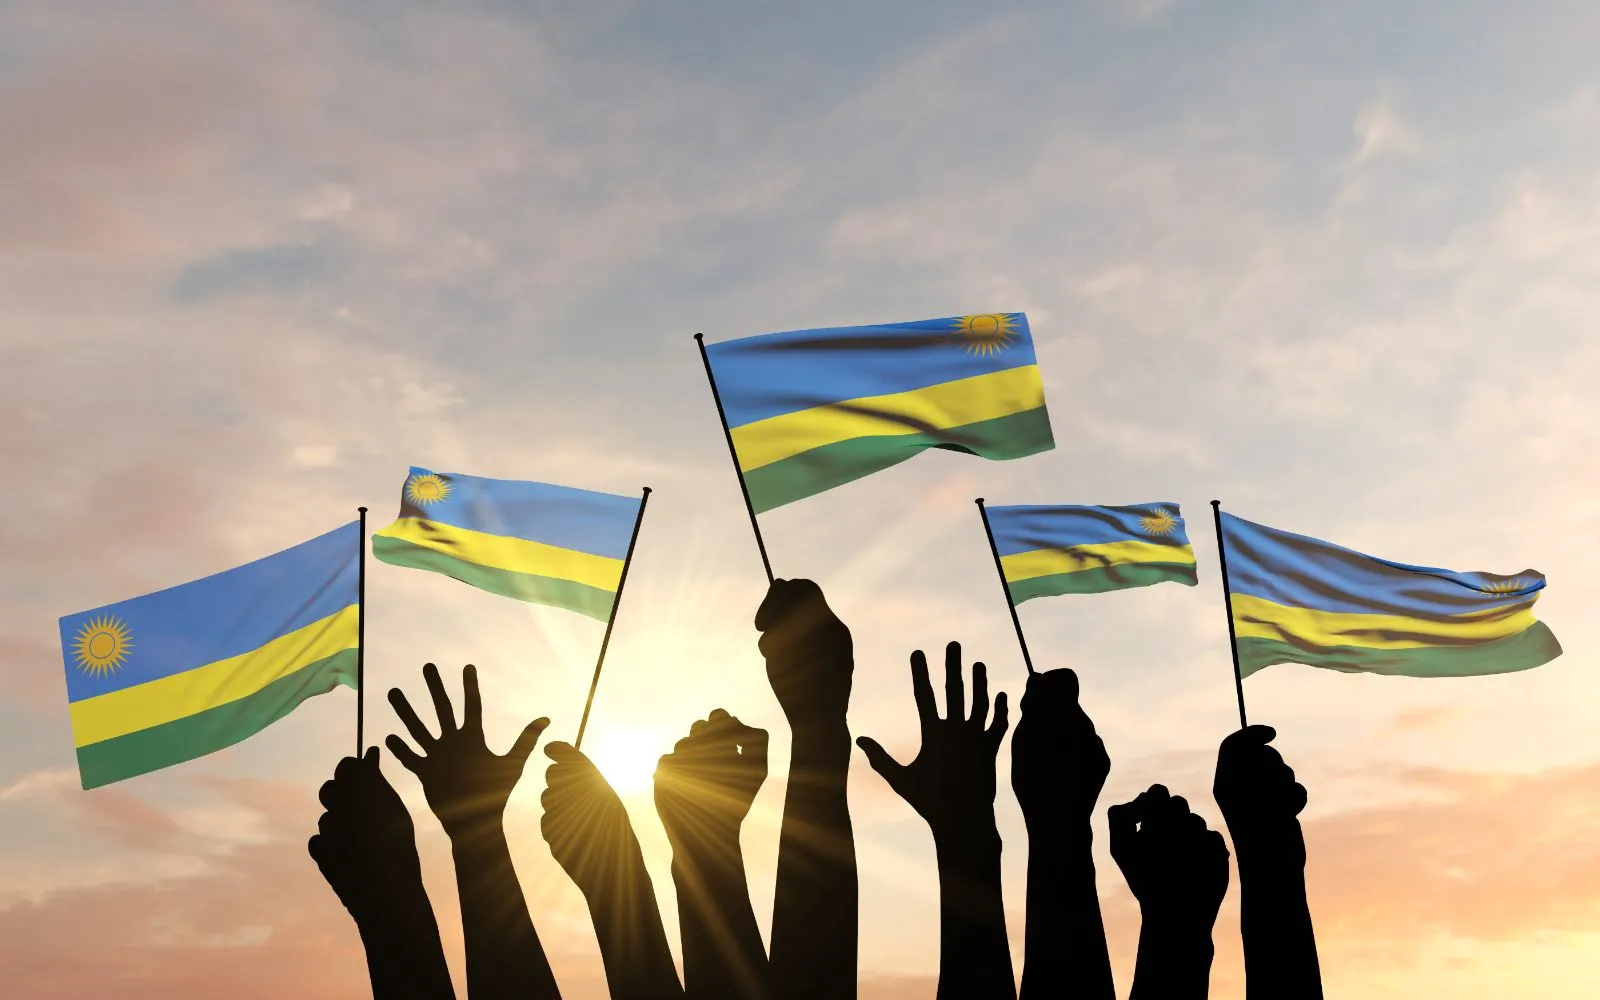 Siluetas de manos levantadas ondeando banderas de Ruanda?w=200&h=150